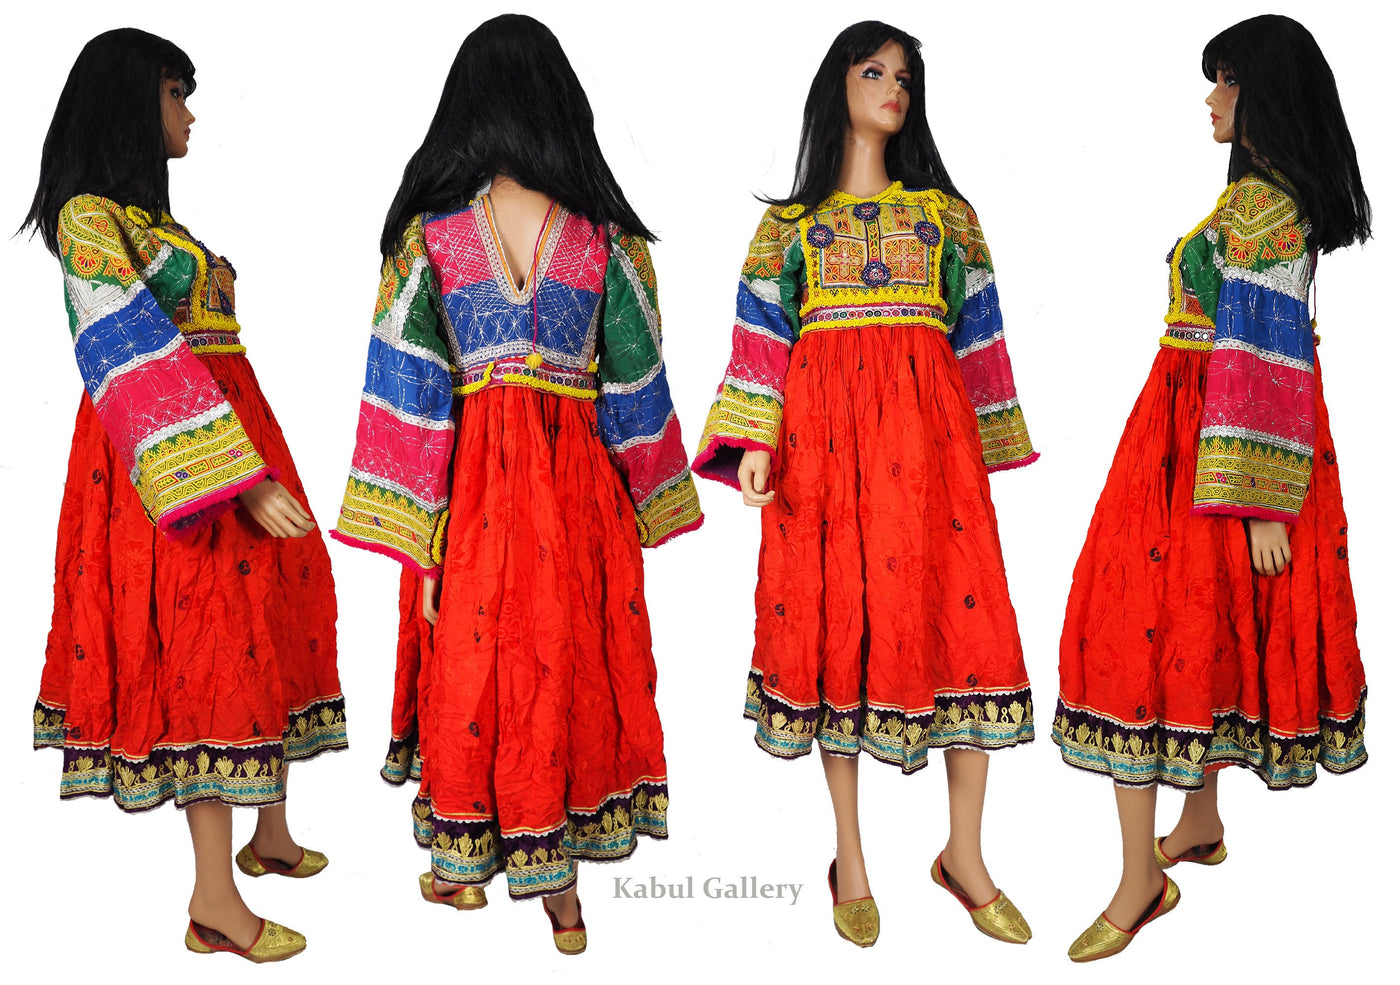 antik Orient Nomaden kuchi frauen Hochzeit Tracht afghan  kleid afghanistan hand bestickte kostüm Nr-WL21/4  Orientsbazar   